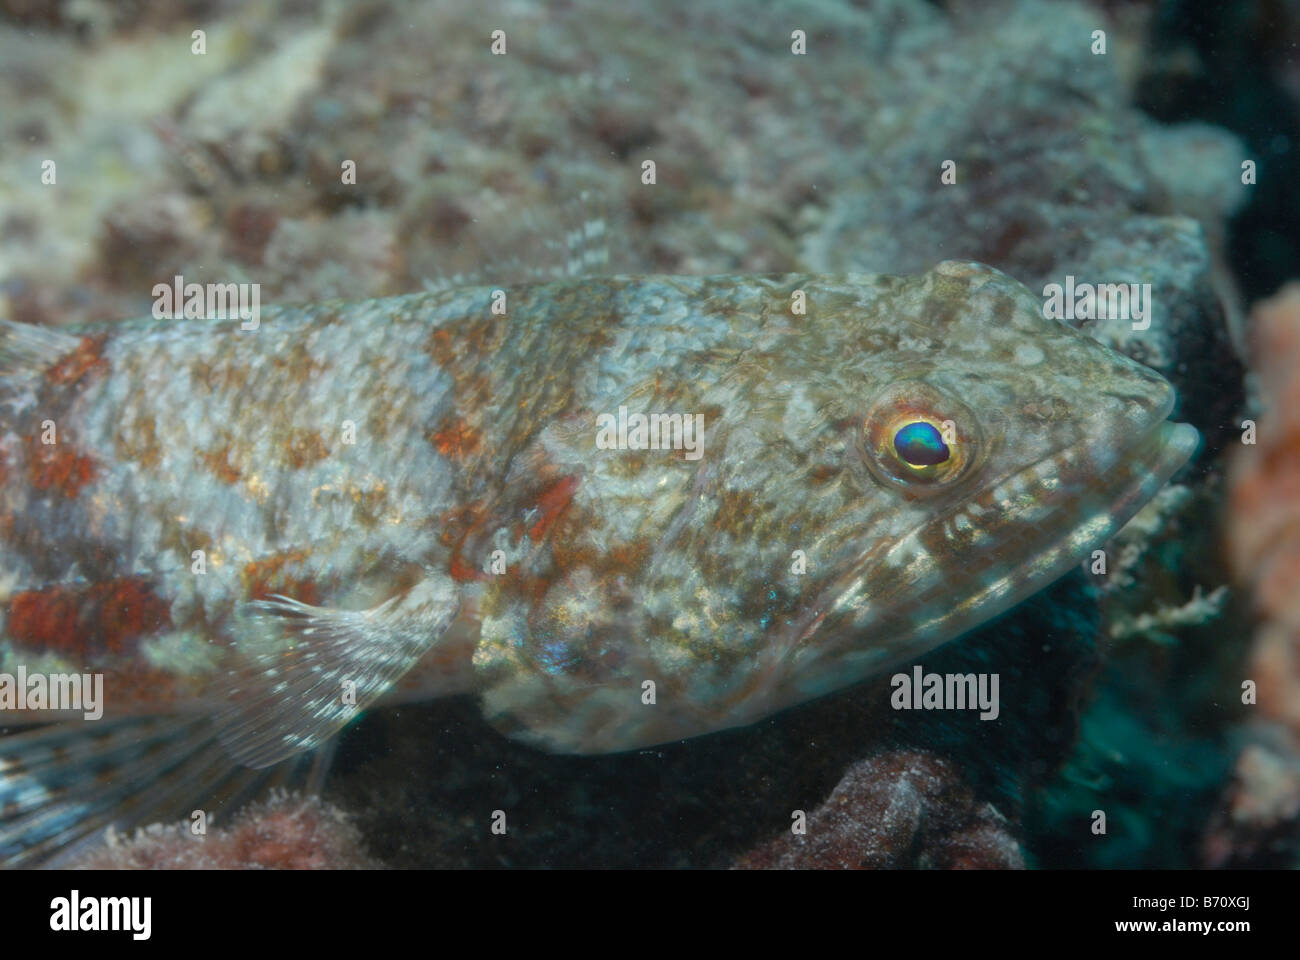 Leuchtturm lizardfish Synodus jaculum Mahe, Seychelles, océan Indien Banque D'Images